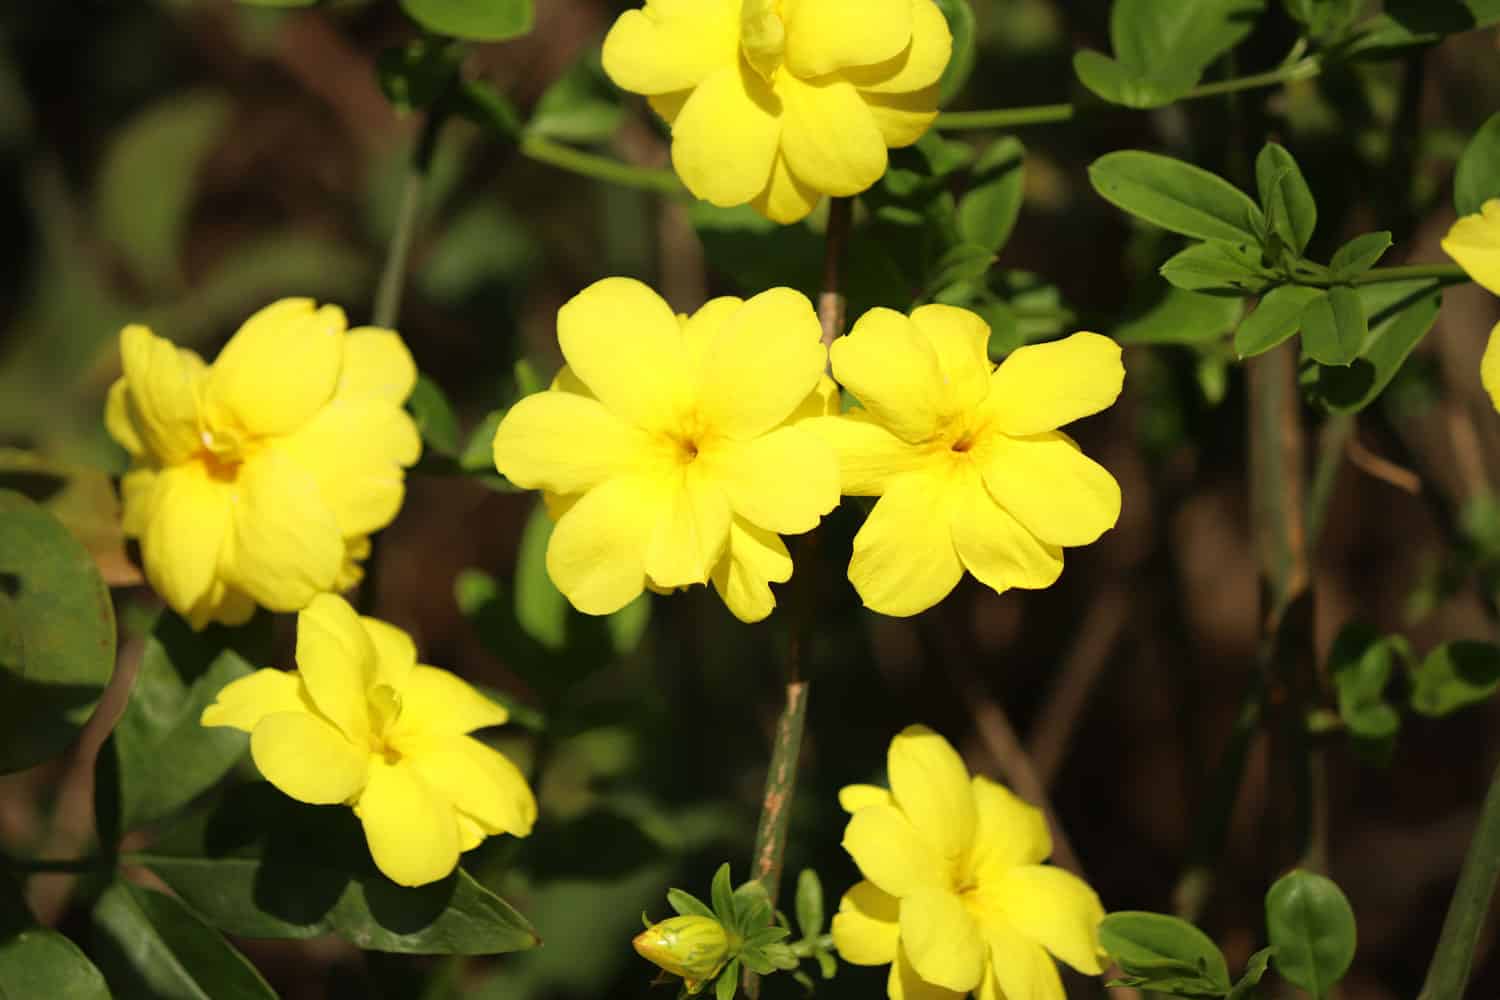 Blooming yellow winter jasmine flowers